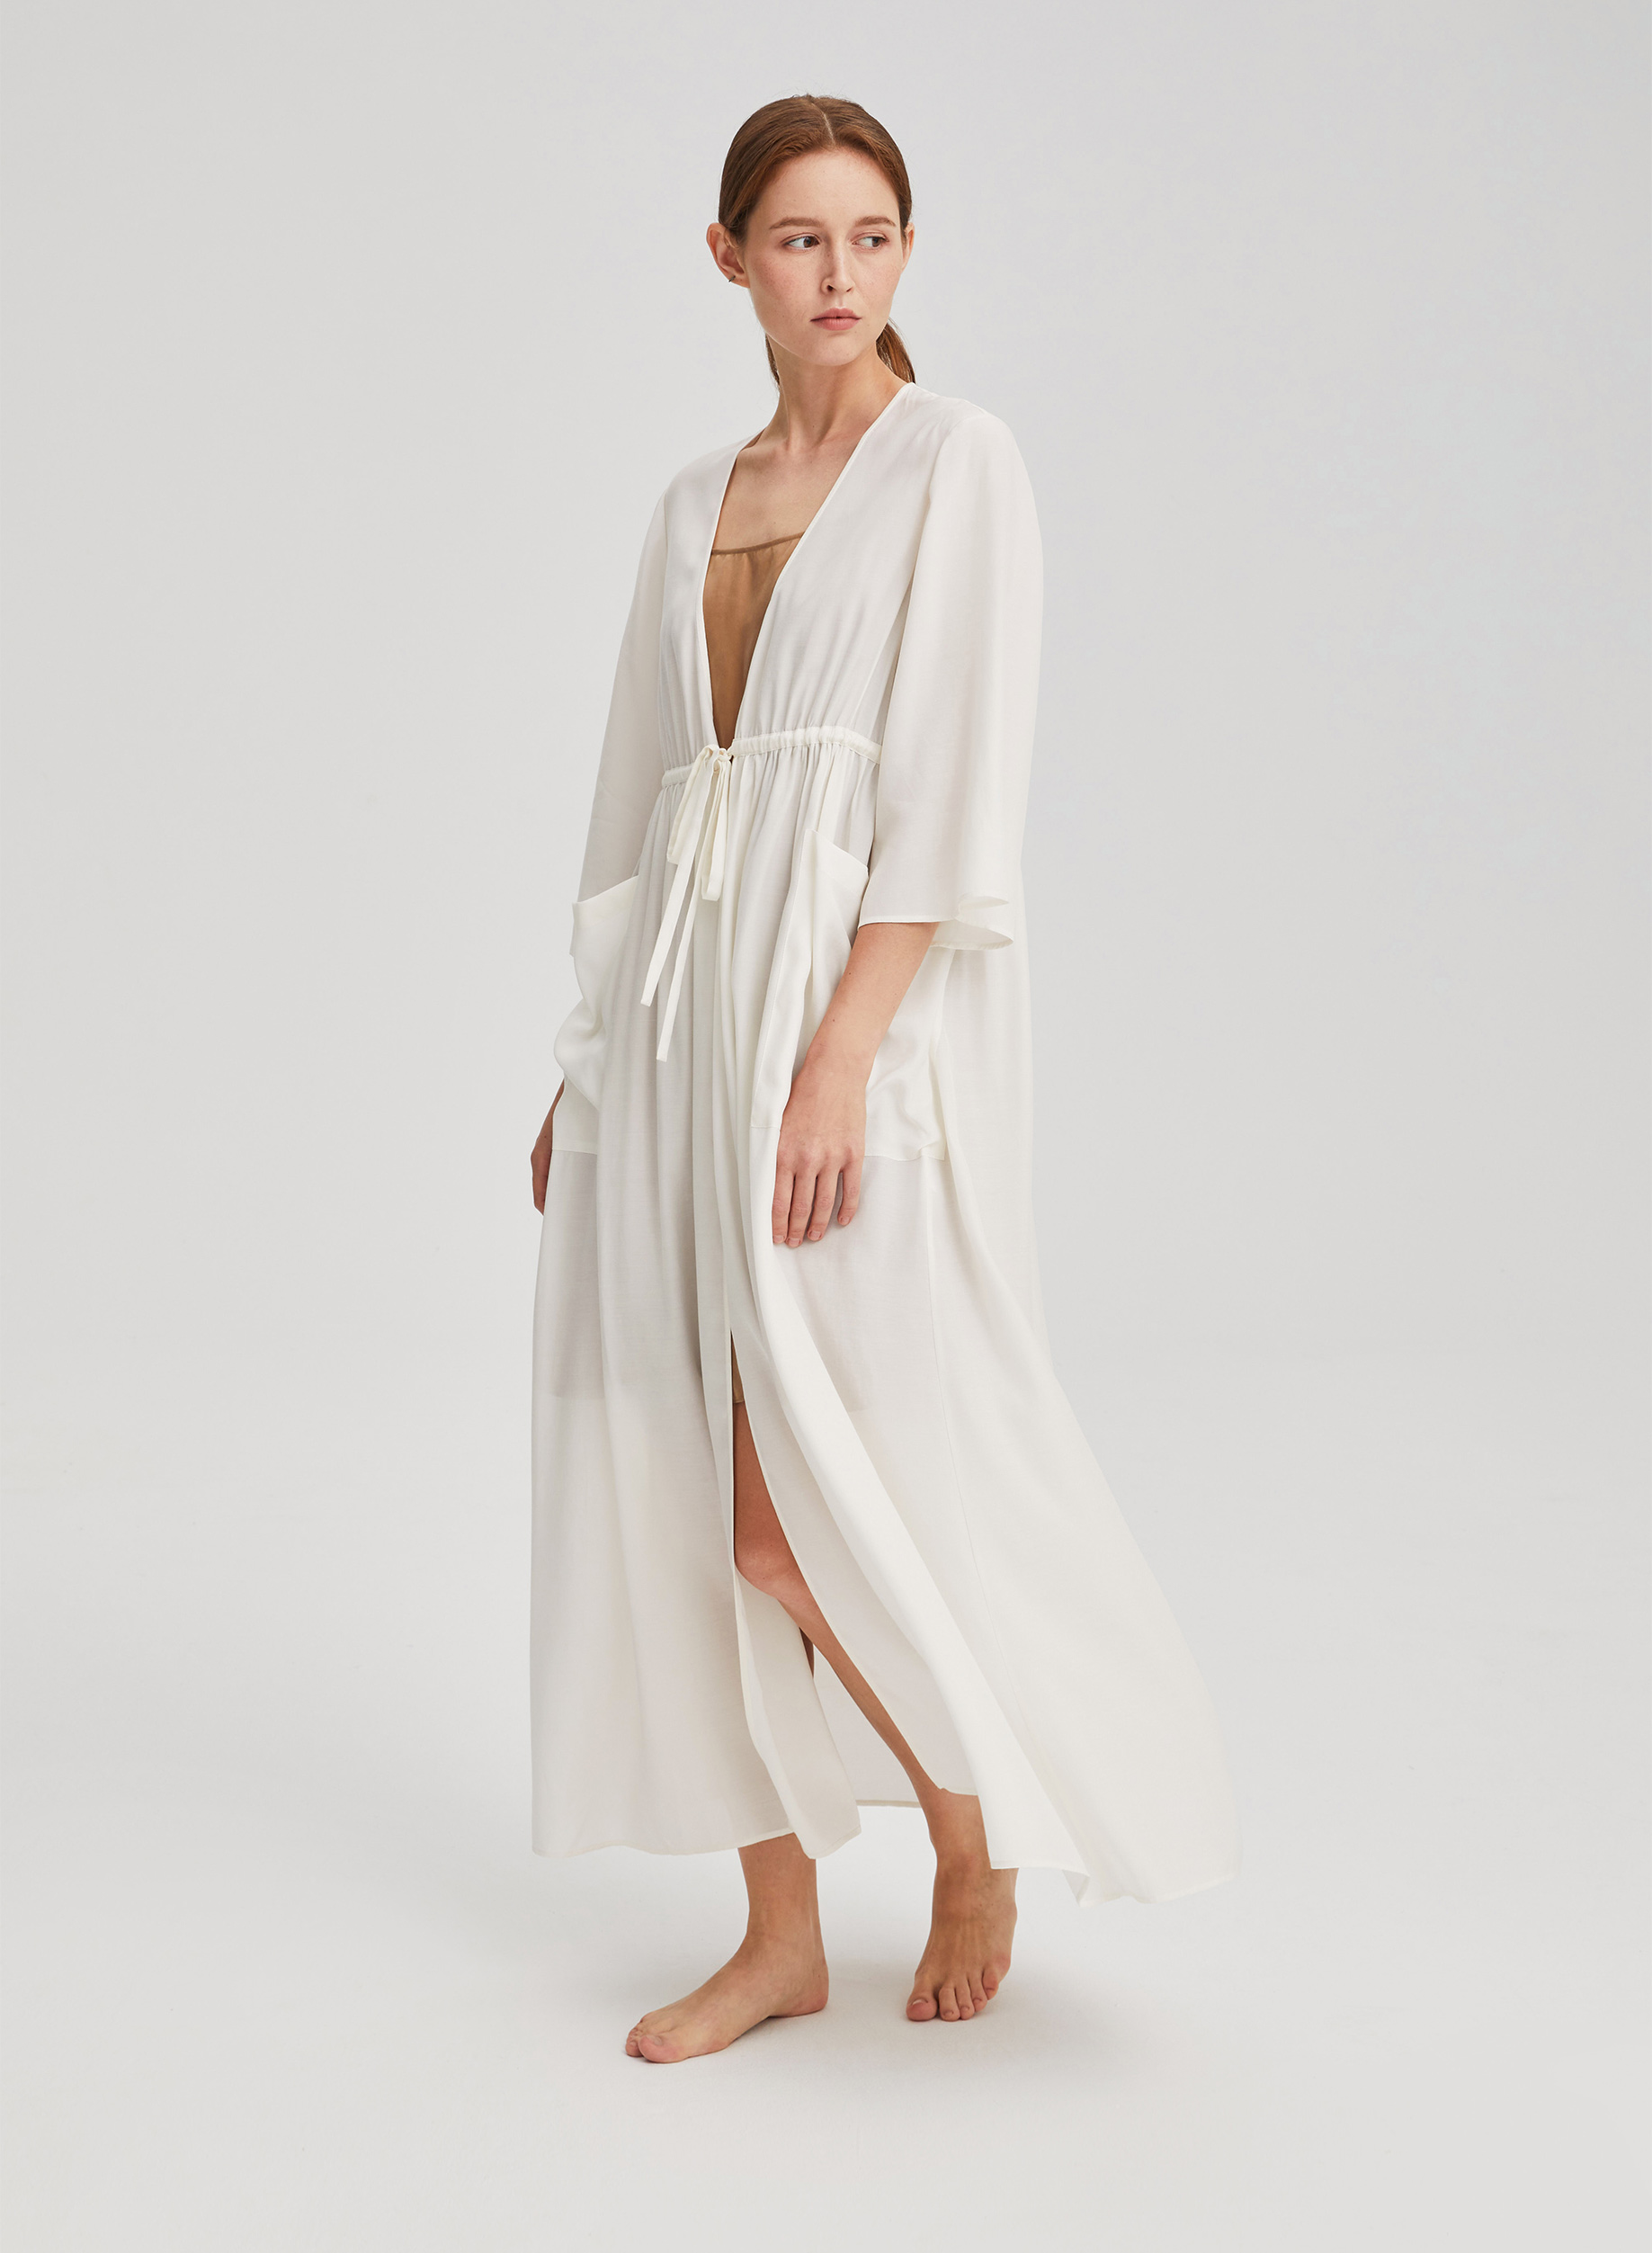 White Classic Kimono Drawstring Robe Trends lifestyle | in